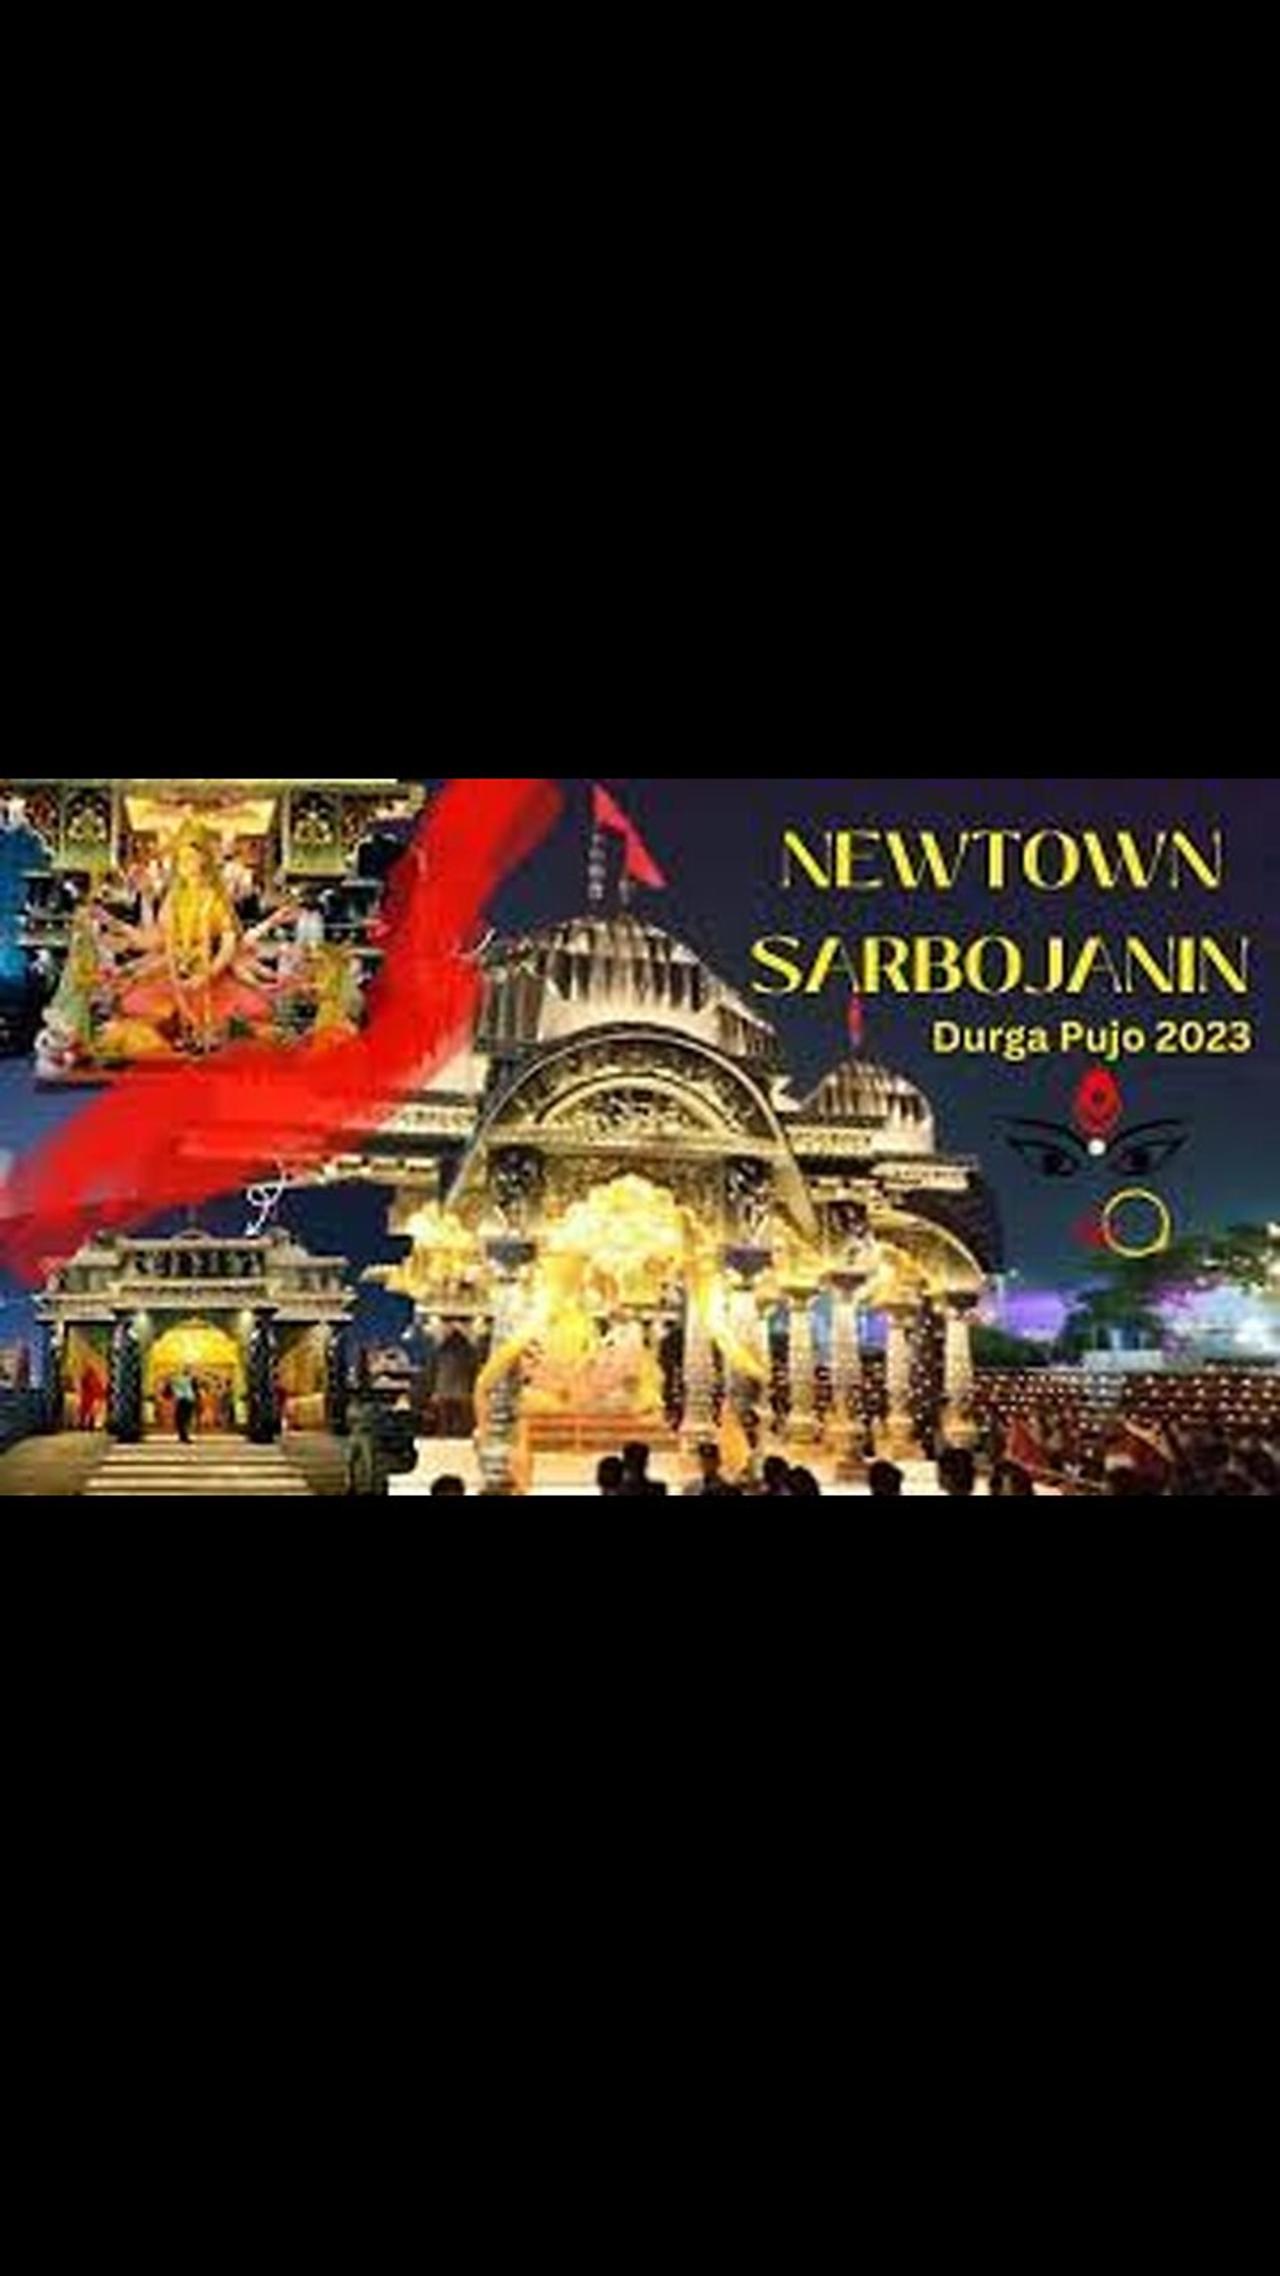 Newtown Sarbojanin Durga Puja 2023 Kolkata India